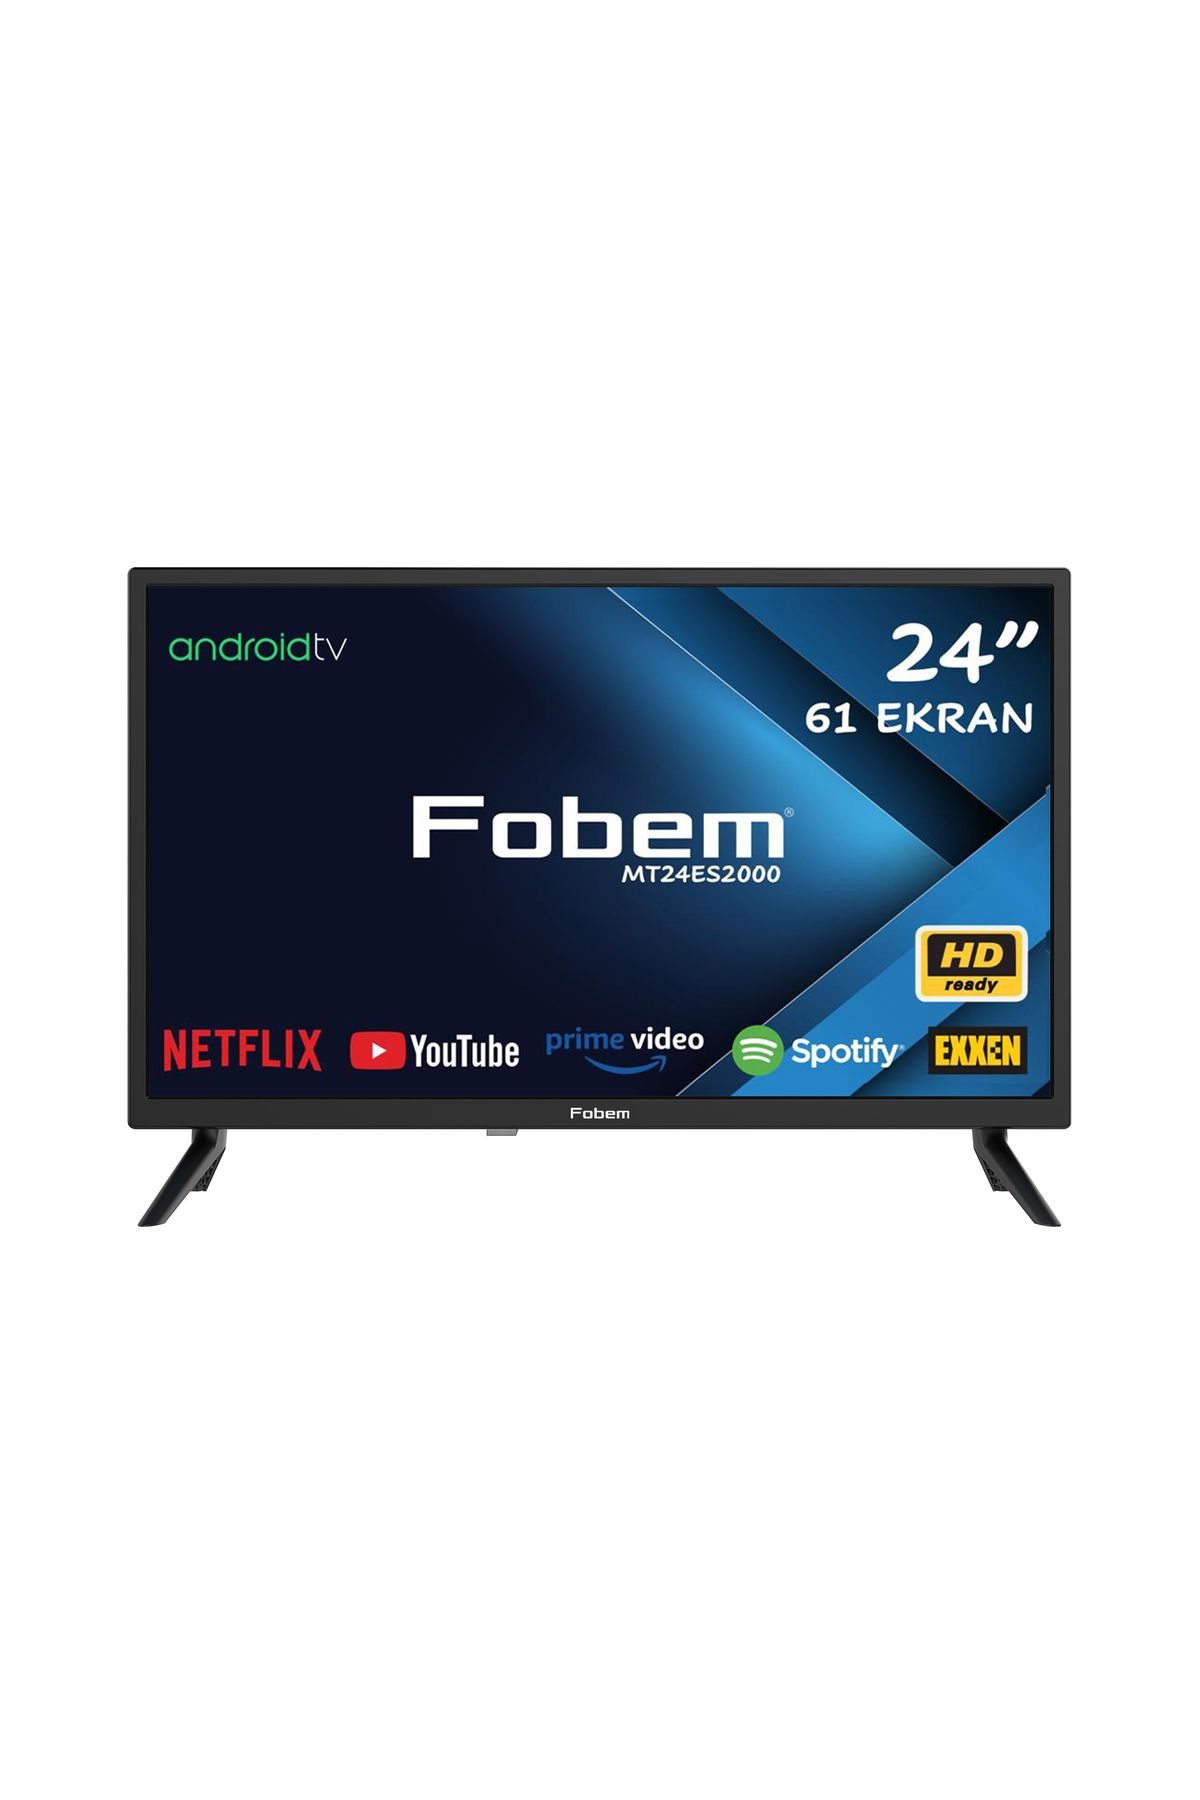 FOBEM MT24ES2000 24''61 Ekran Dahili Uydu Alıcılı HD Ready Android Smart LED TV